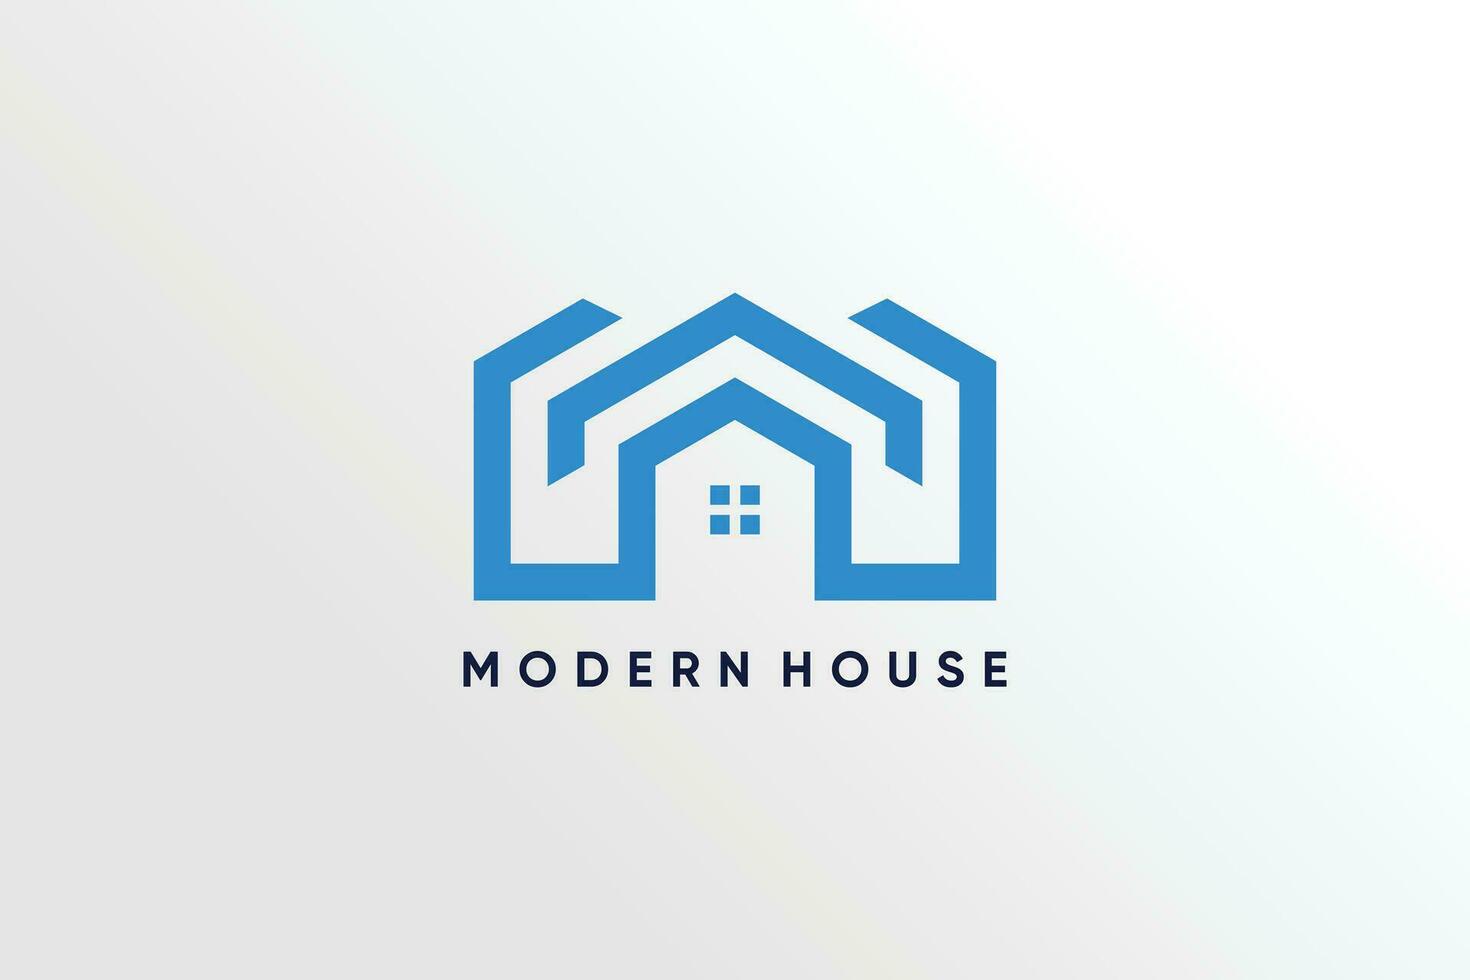 Building logo vector with modern concept design idea